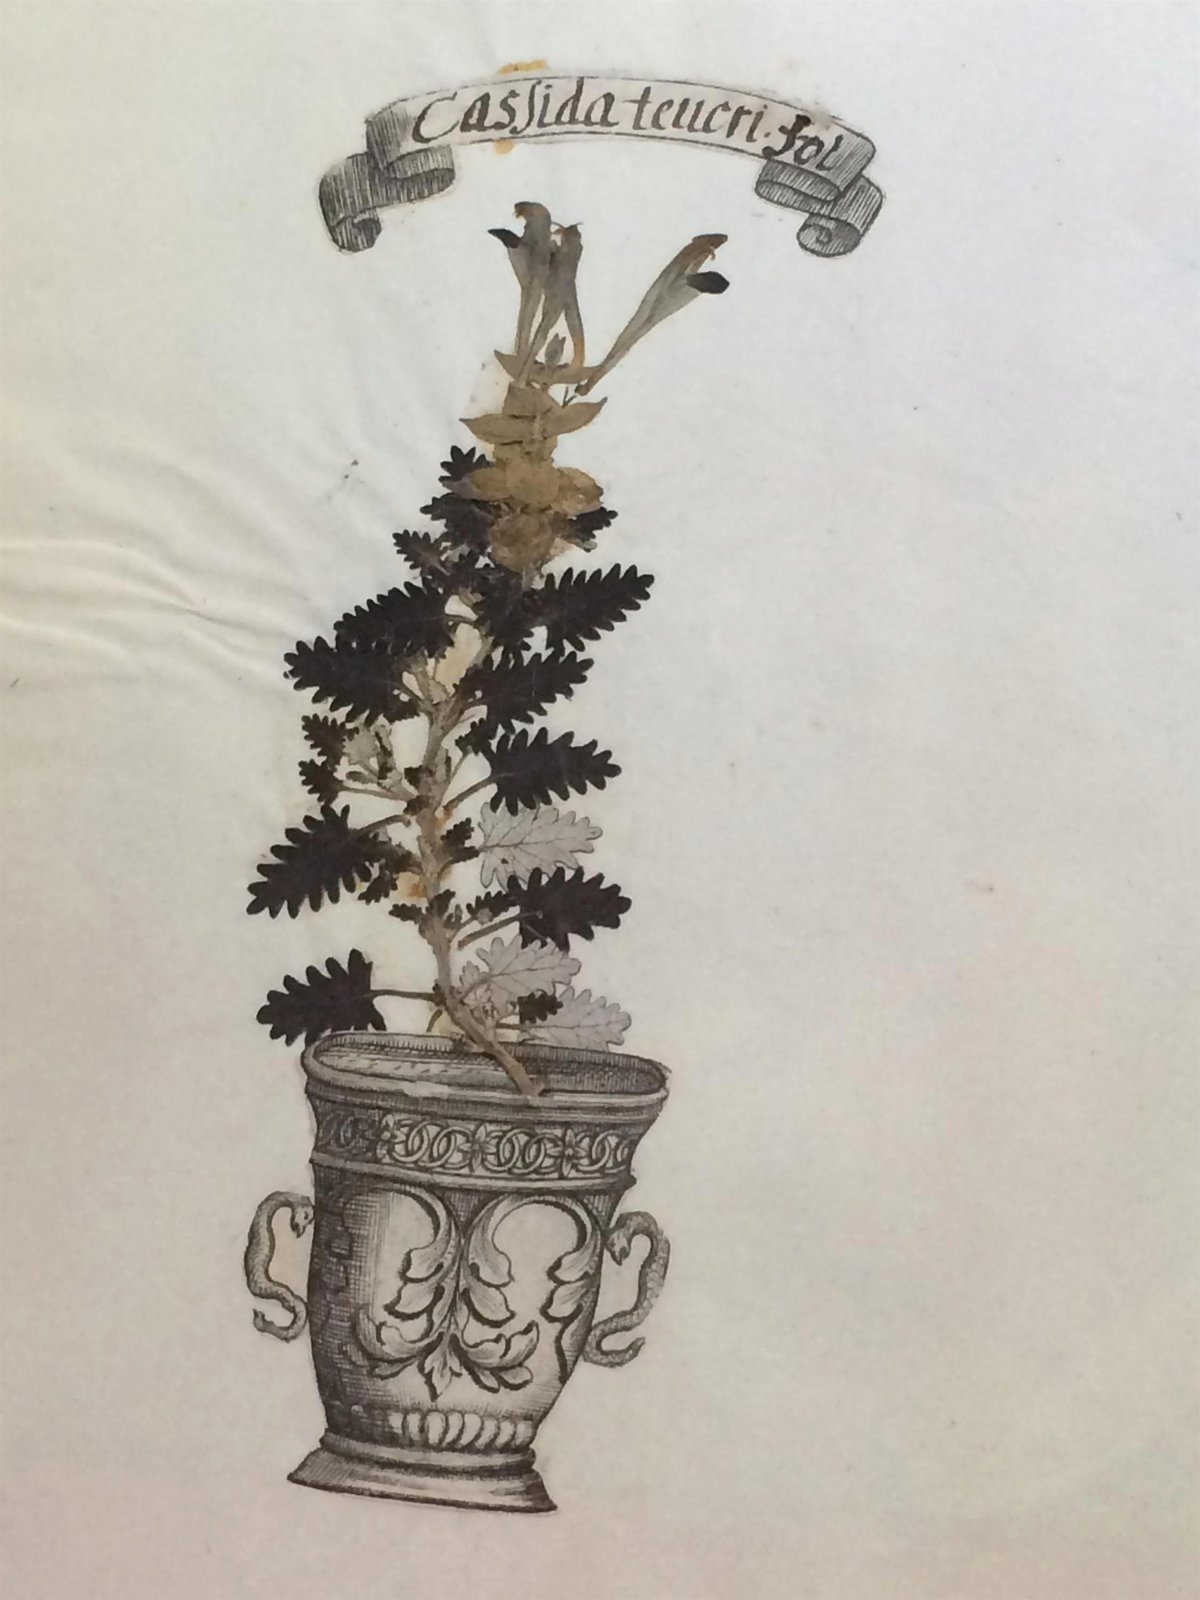 Herbářová položka s rostlinou šišák východní z konce 18. století.